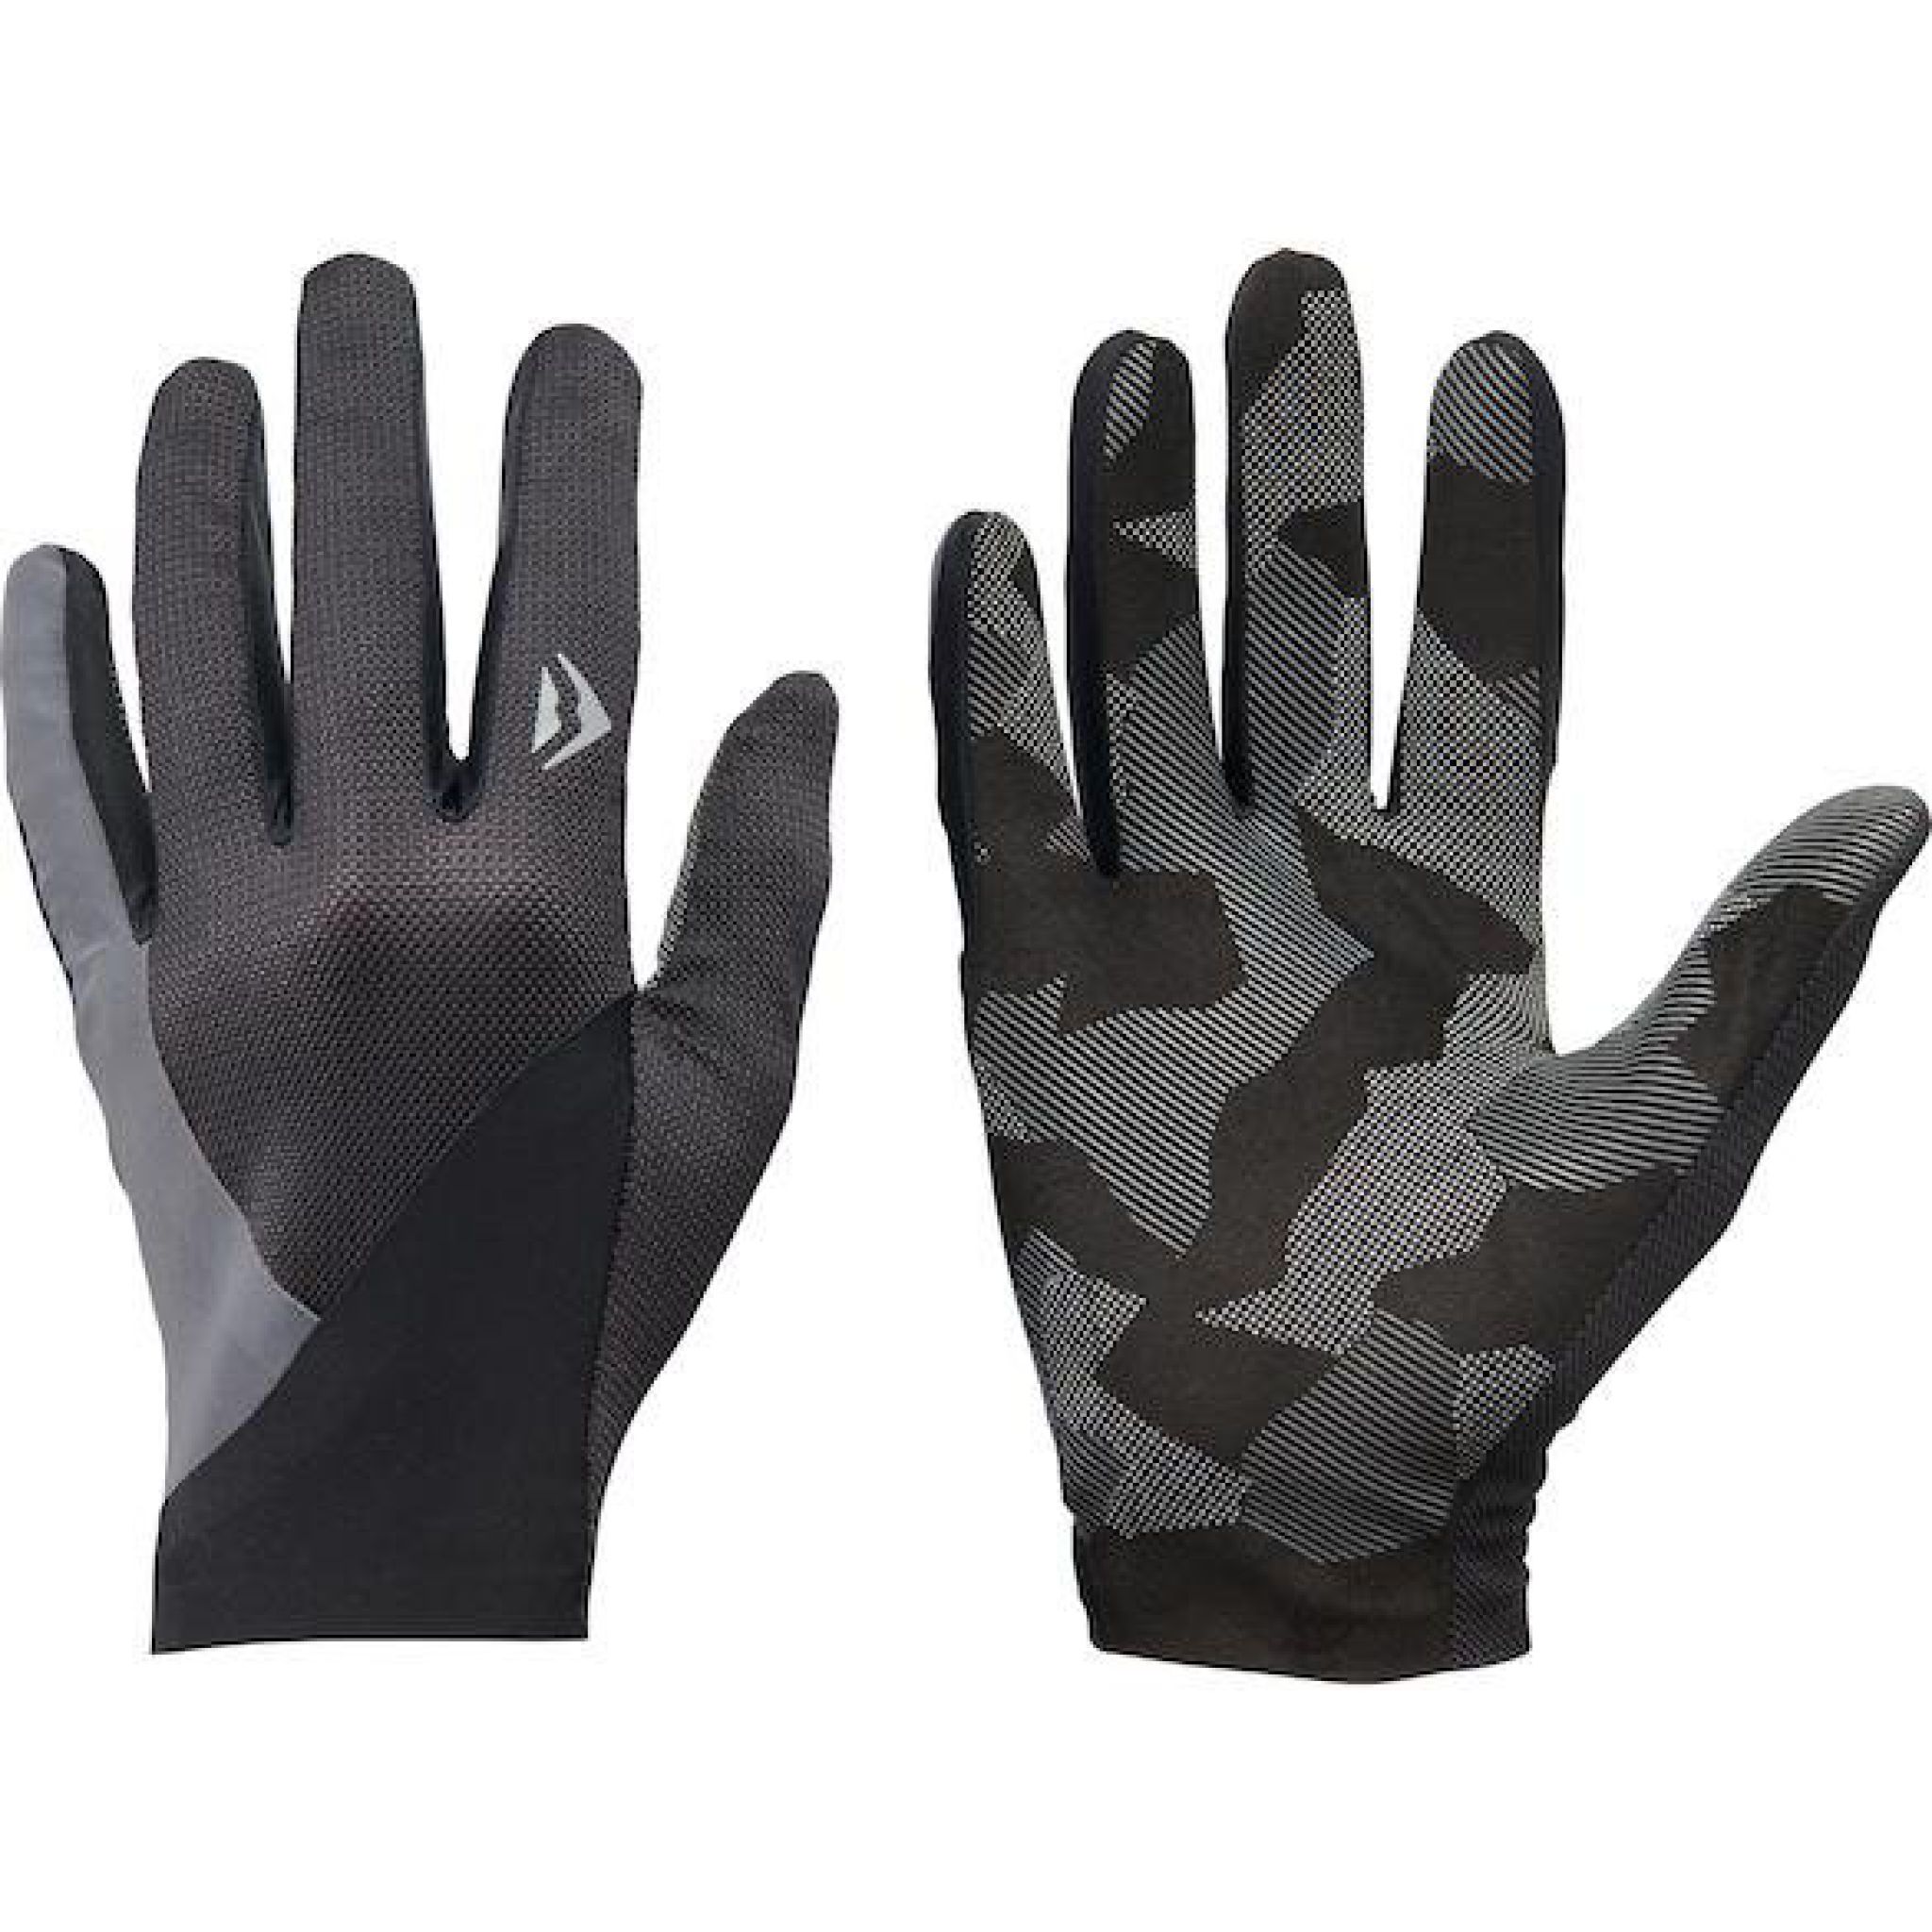 platform racket goedkeuren Op zoek naar Handschoenen Second Skin Zwart/Grijs? Bestel direct online. |  Merida Benelux